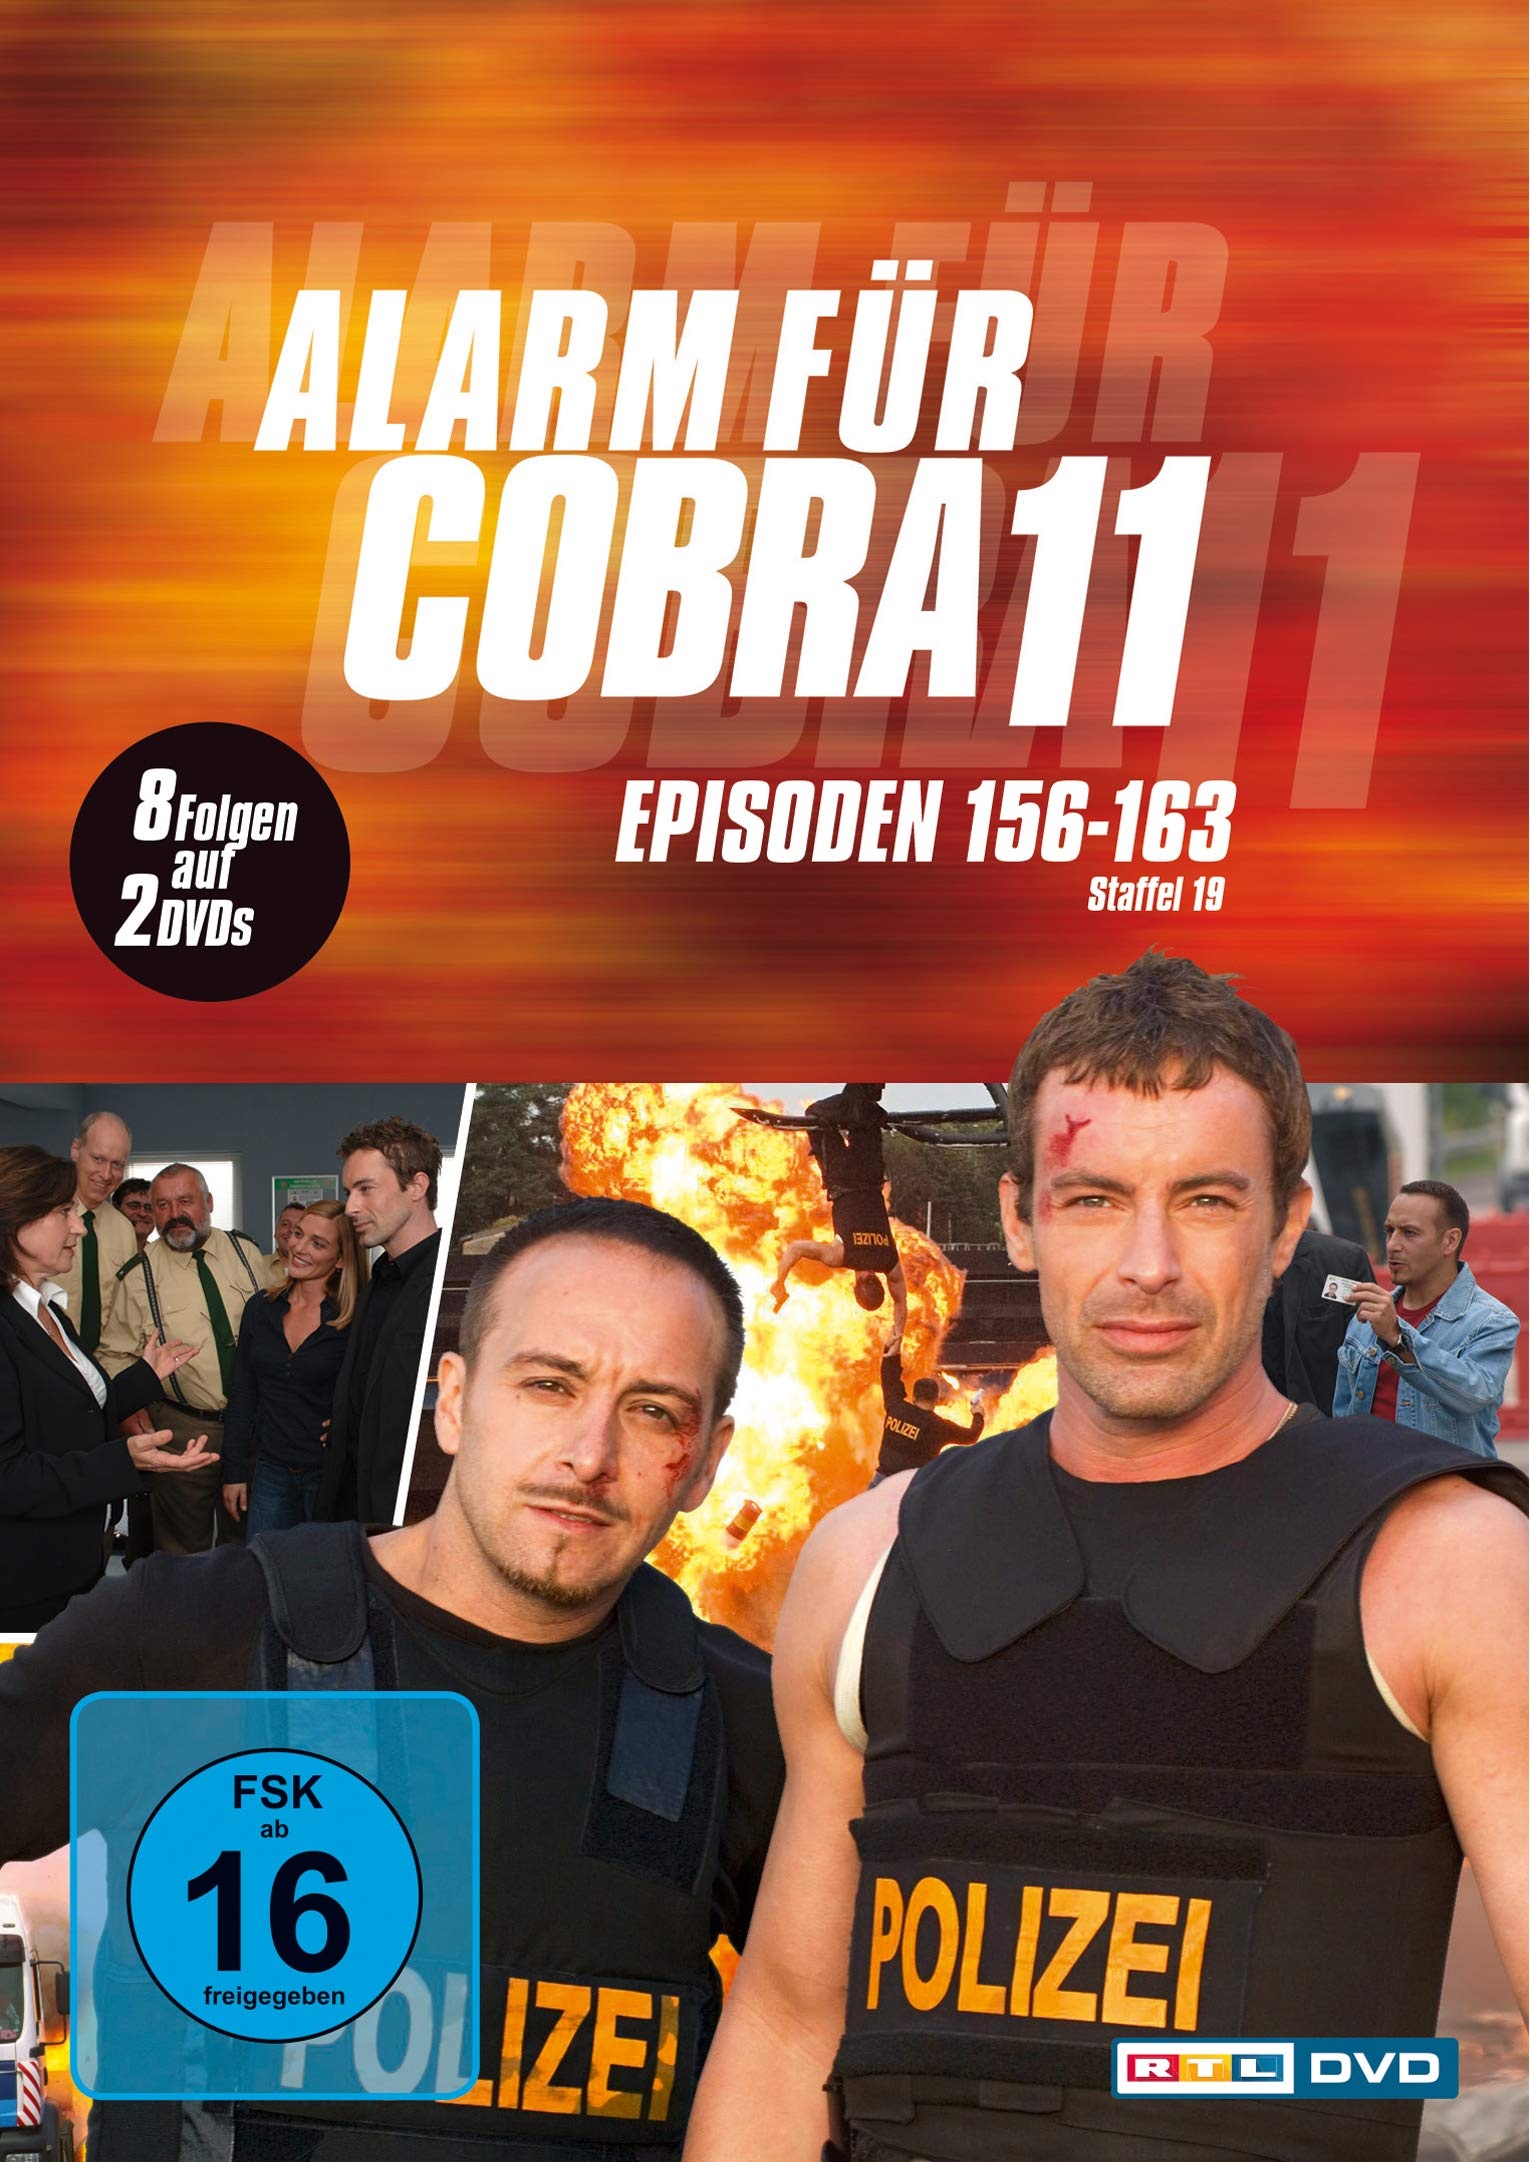 Alarm für Cobra 11 - Staffel 19 [2 DVDs]